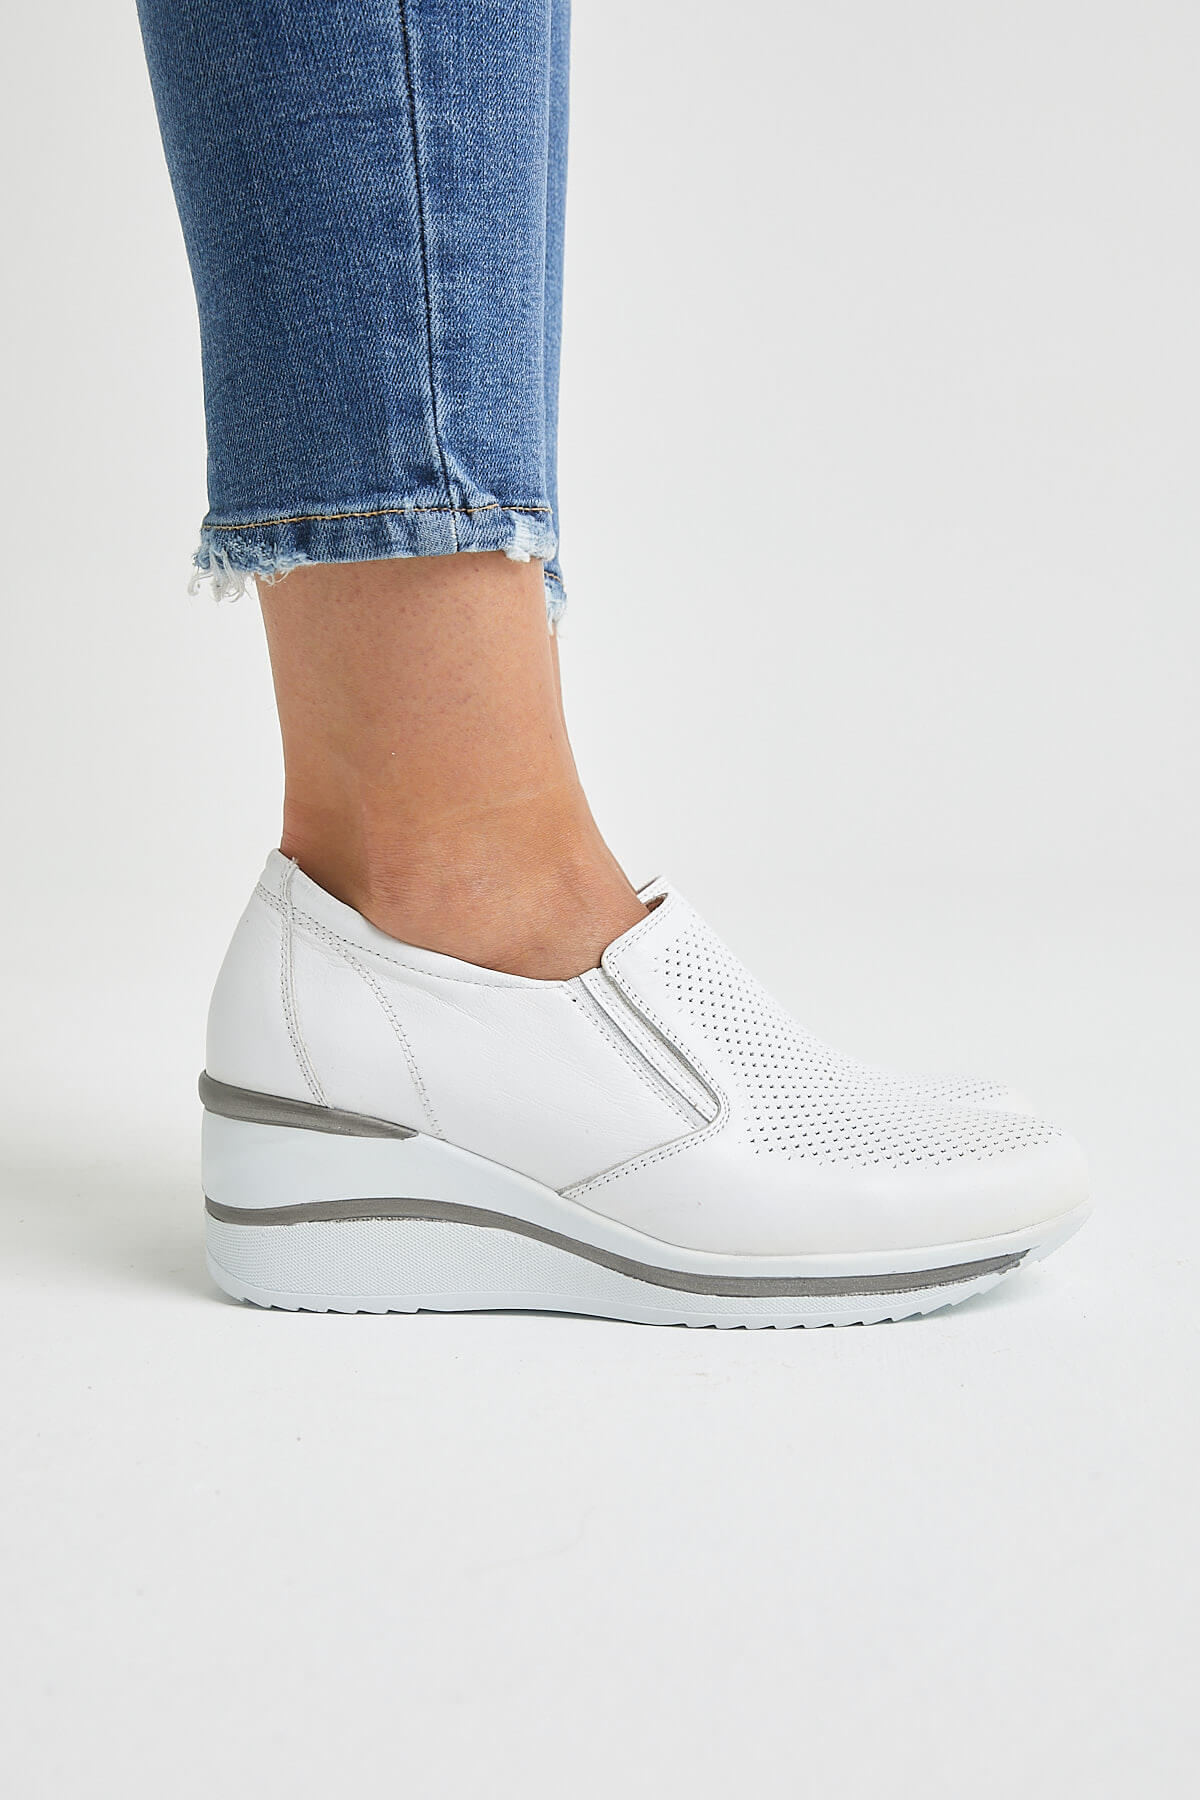 Kadın Dolgu Topuk Deri Sneakers Beyaz 2111501Y